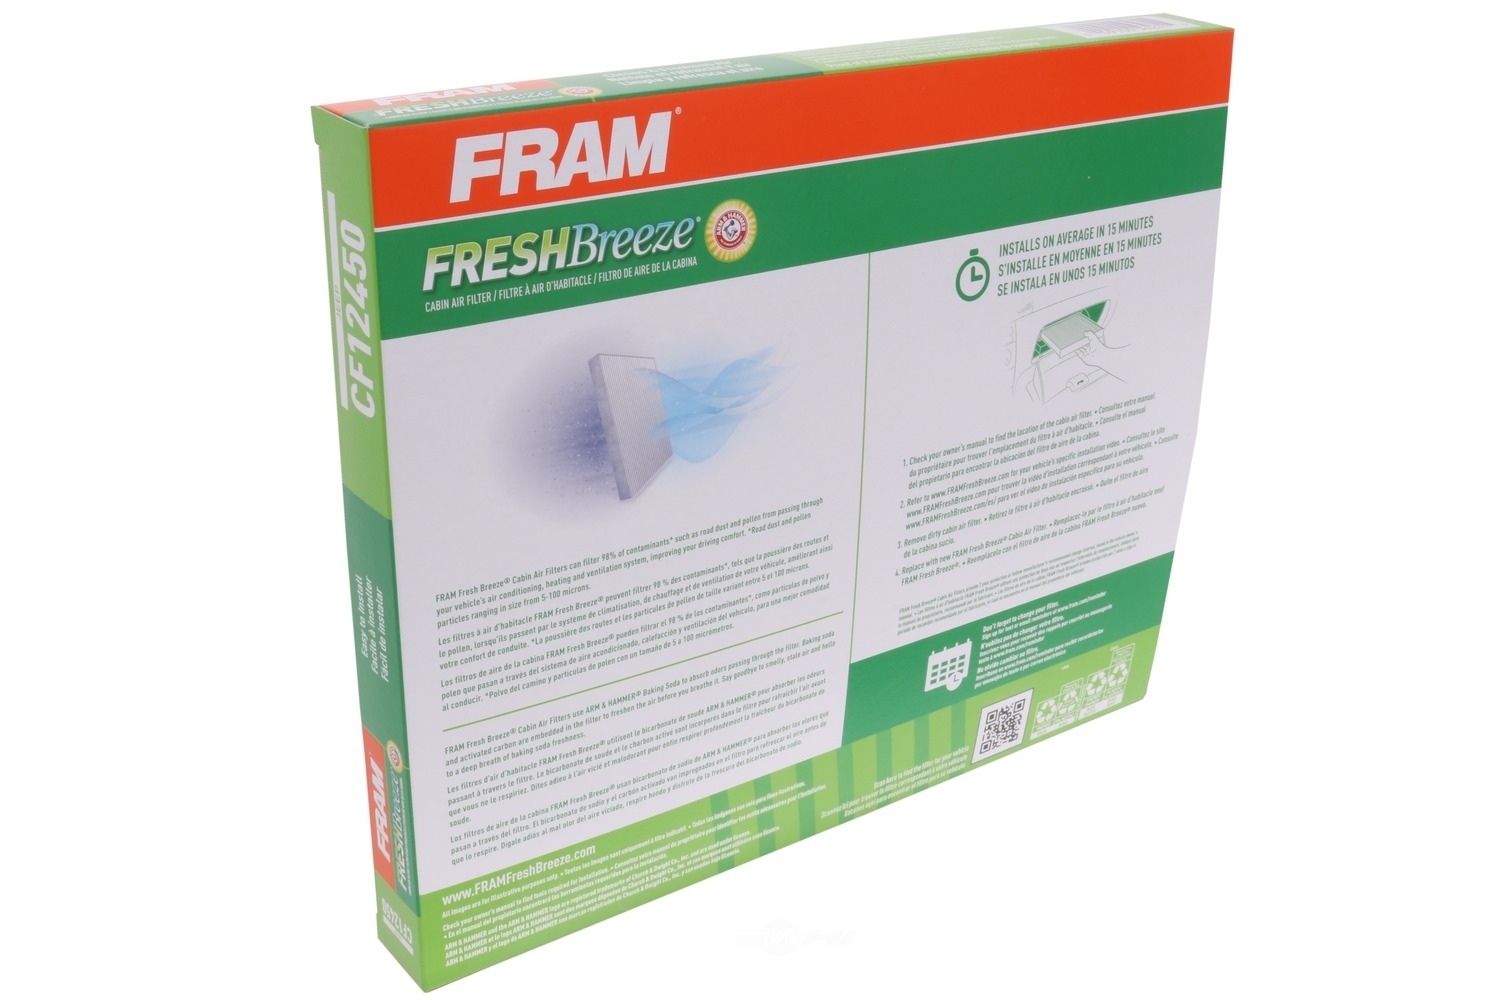 FRAM - Cabin Air Filter - FRA CF12450